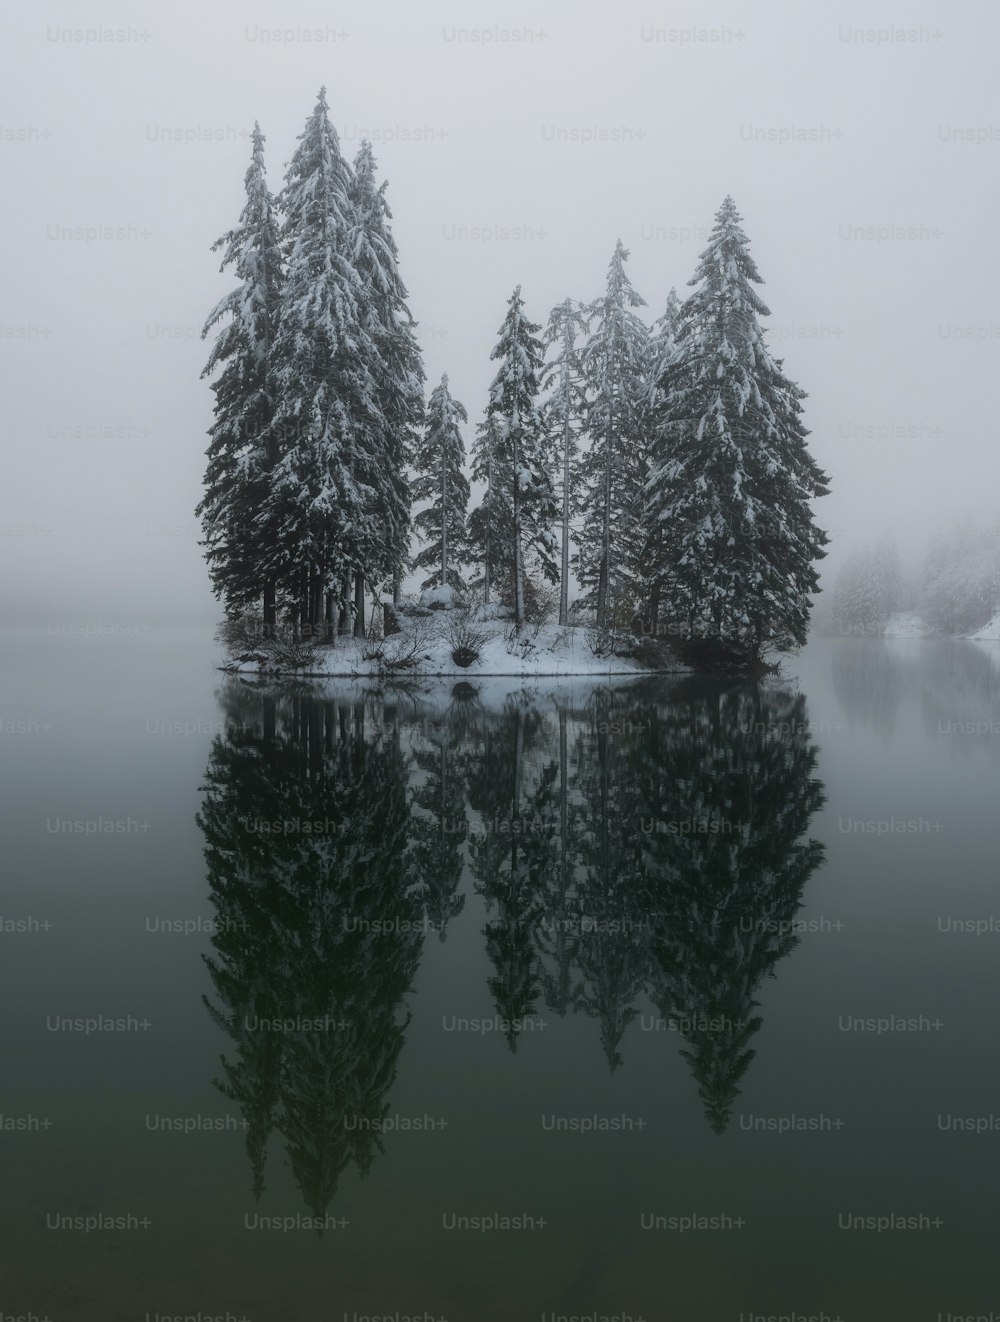 um corpo de água cercado por árvores cobertas de neve